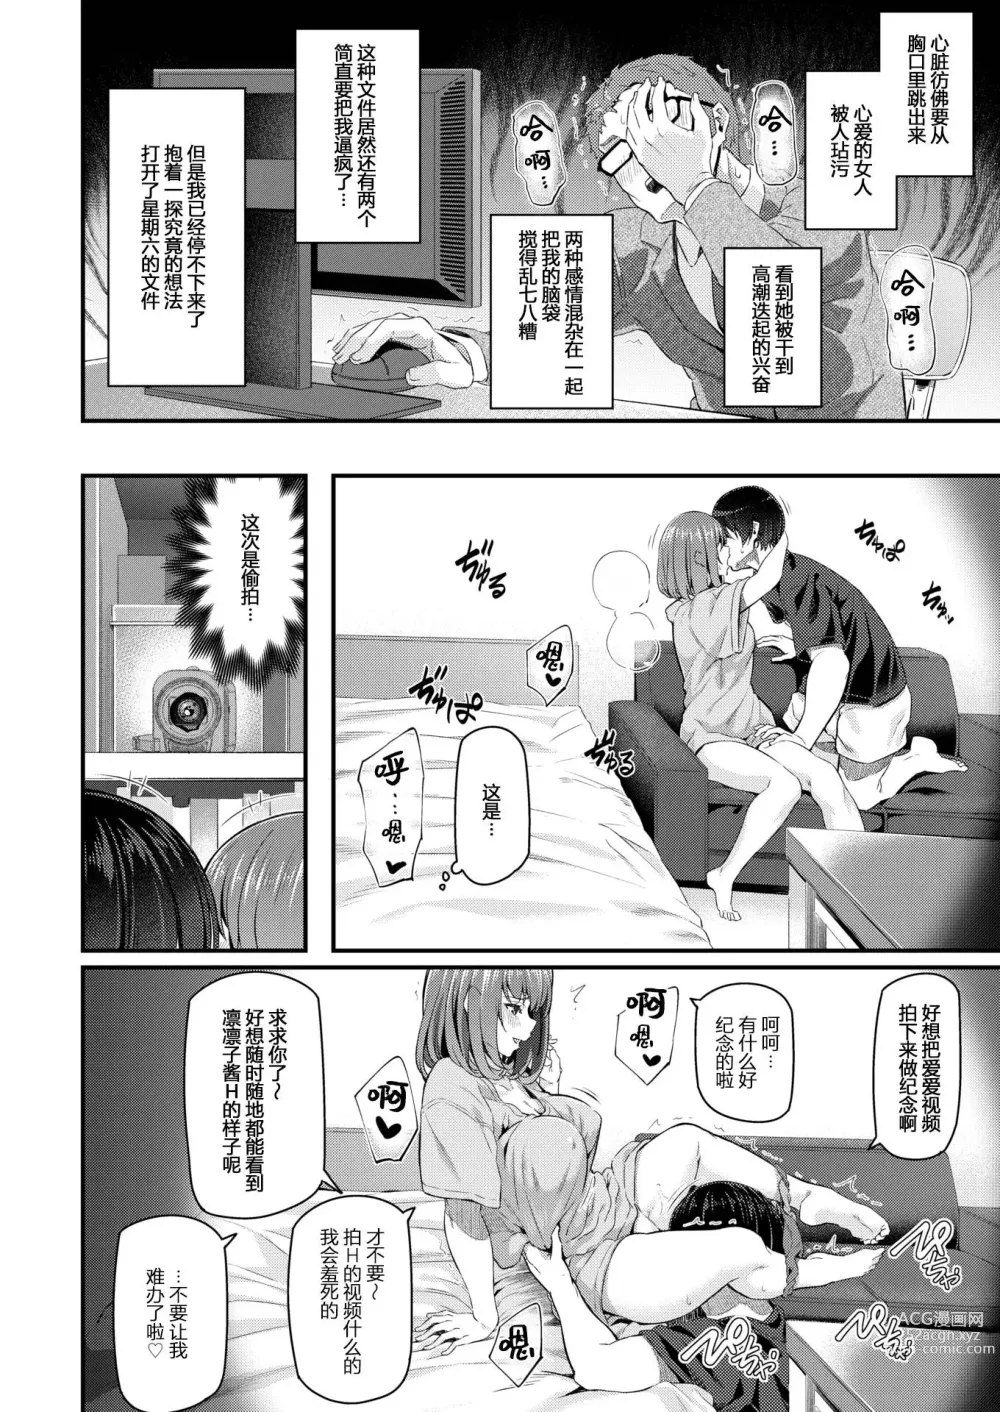 Page 16 of manga 新人OL 森藤凛々子